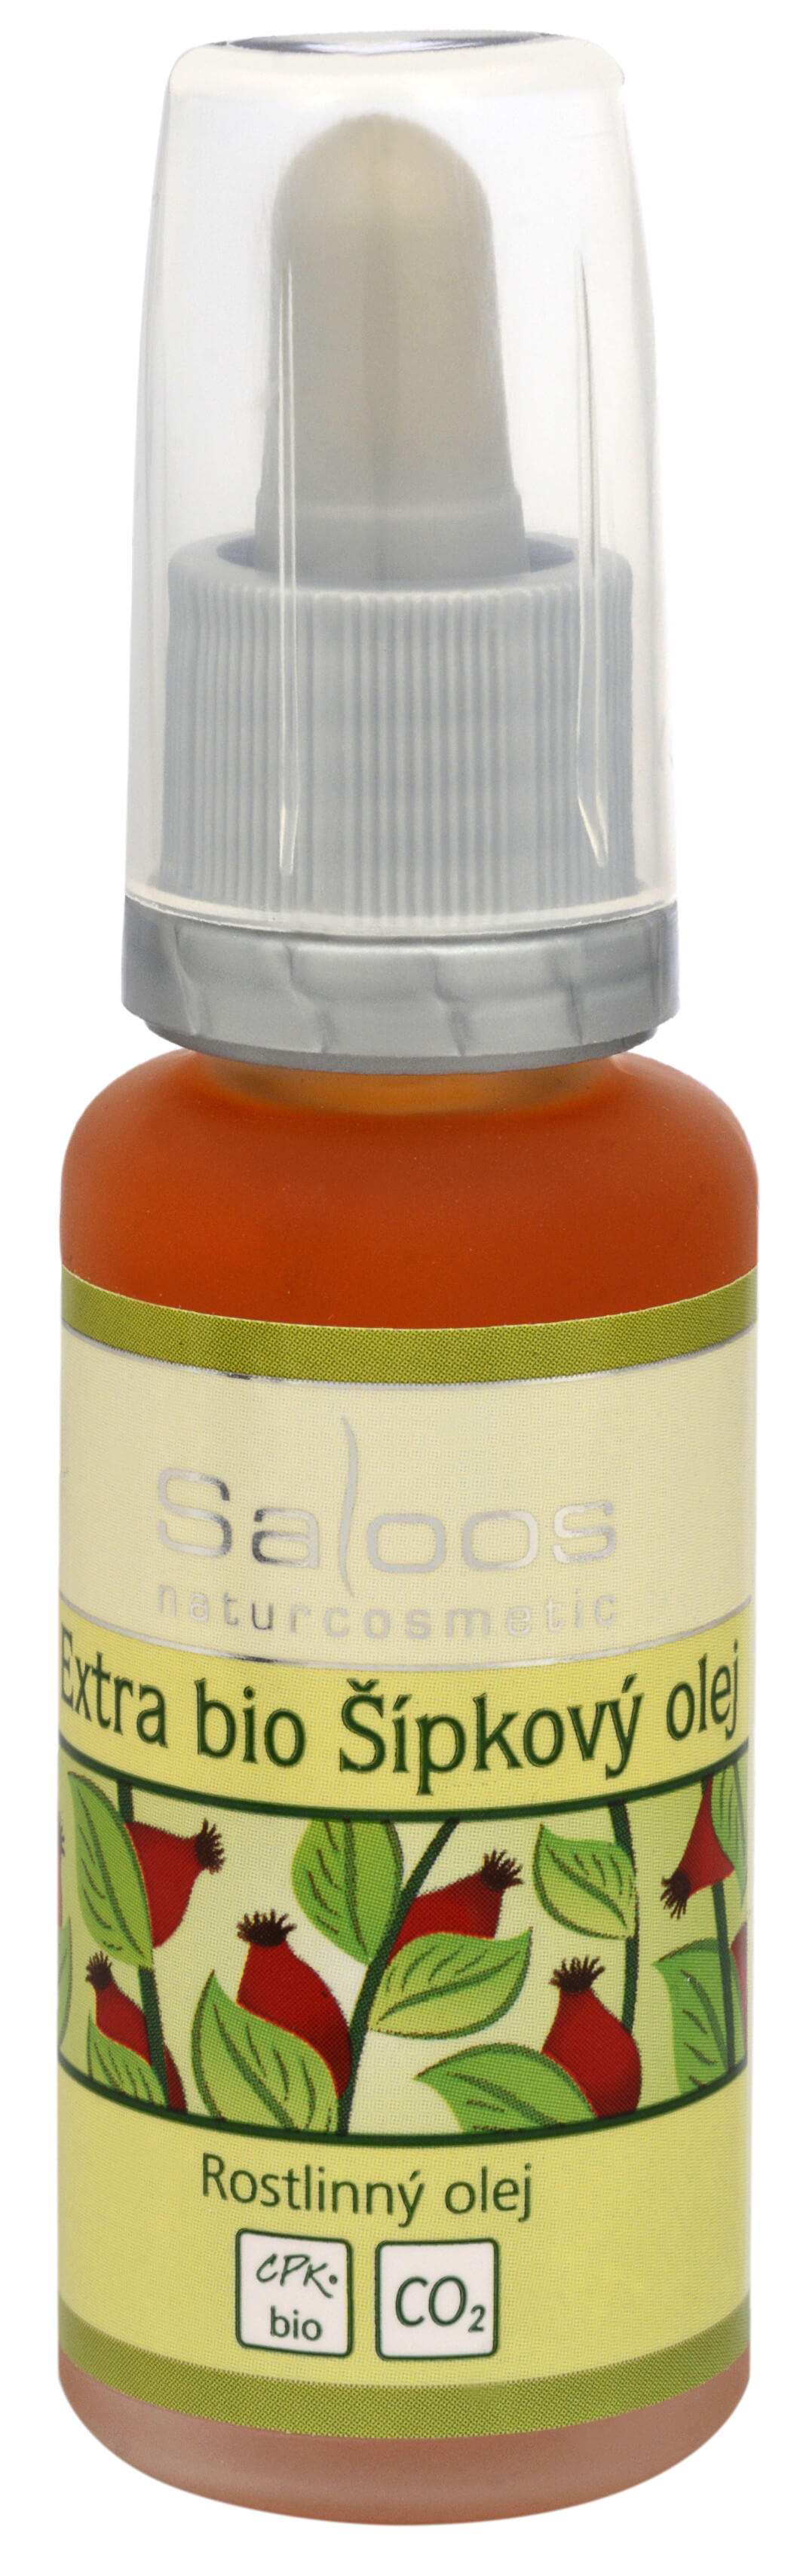 Zobrazit detail výrobku Saloos BIO Extra šípkový olej 20 ml + 2 měsíce na vrácení zboží